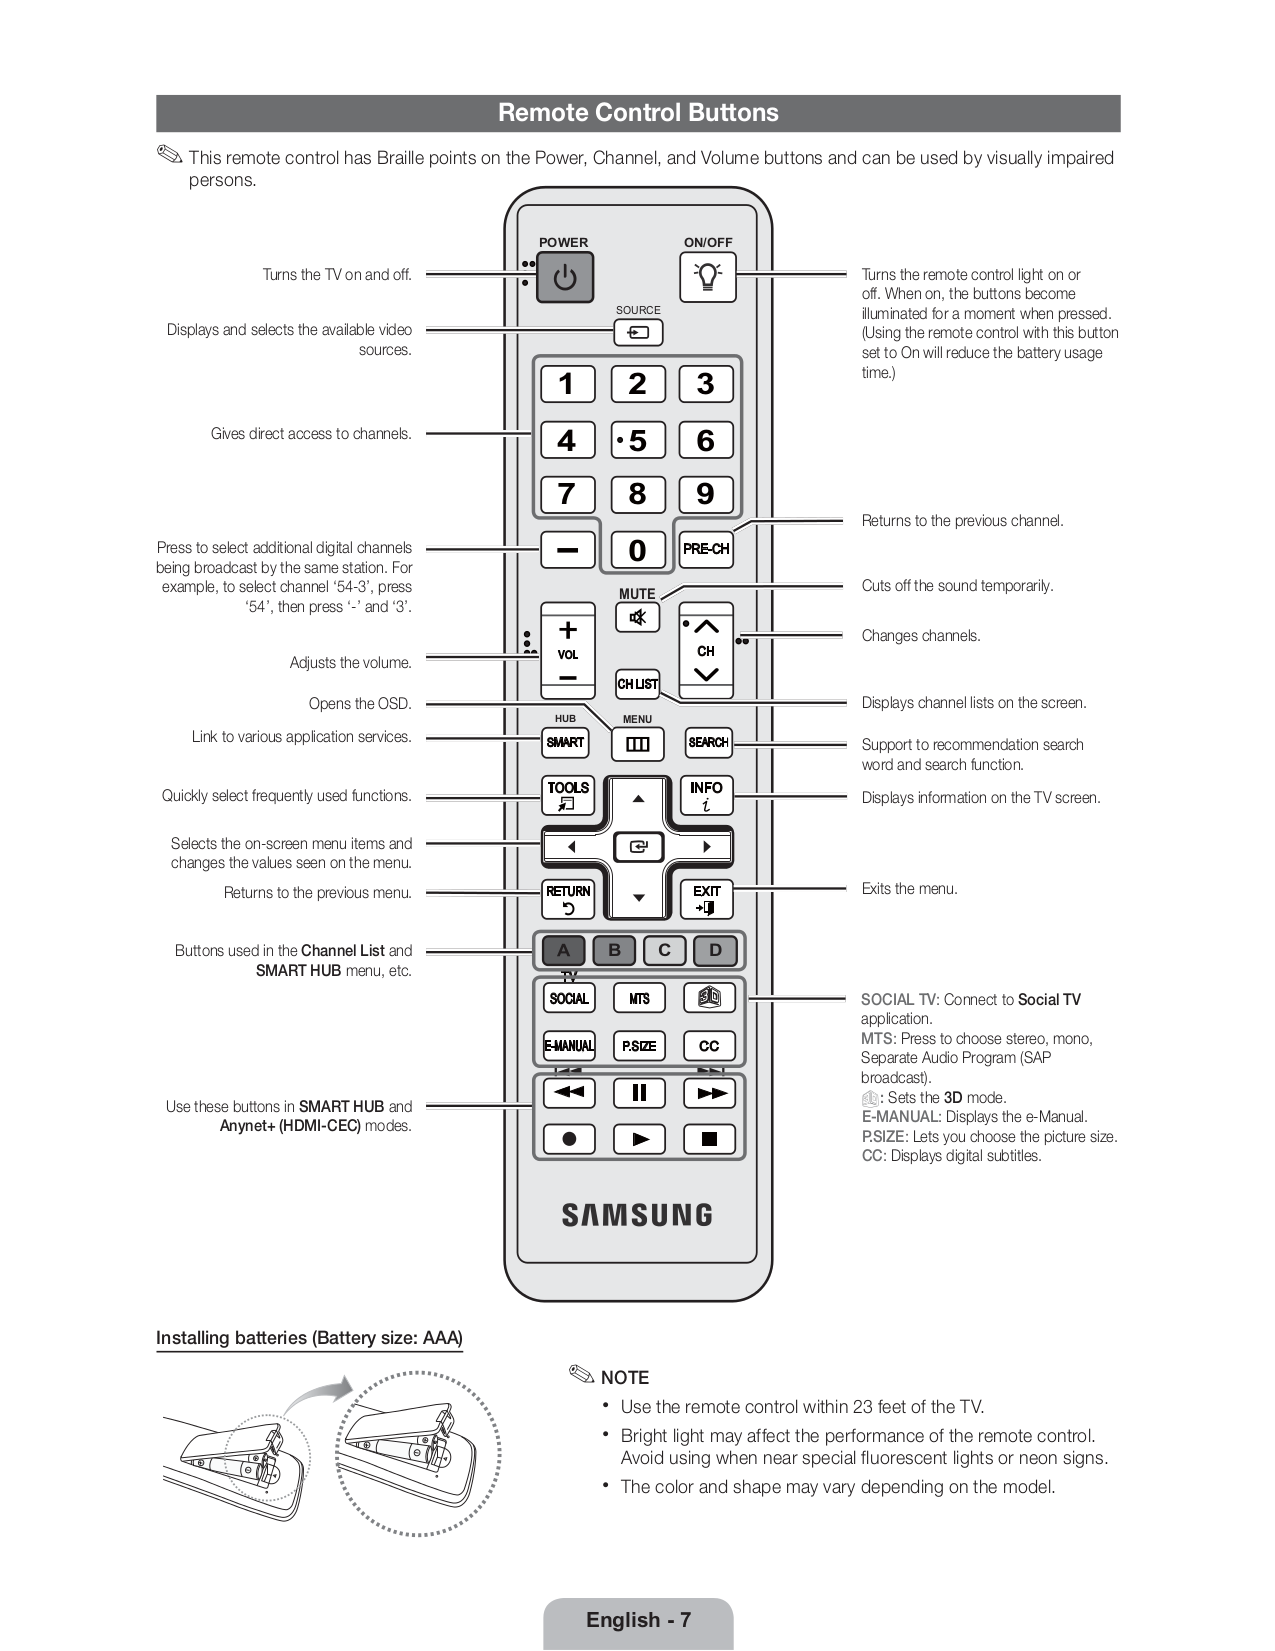 Настройка пульта телевизора samsung. Пульт для телевизора Samsung описание кнопок. Функциональные кнопки на пульте телевизора самсунг. Телевизор Samsung ue32c4000pw. Samsung le37c530f1w пульт.